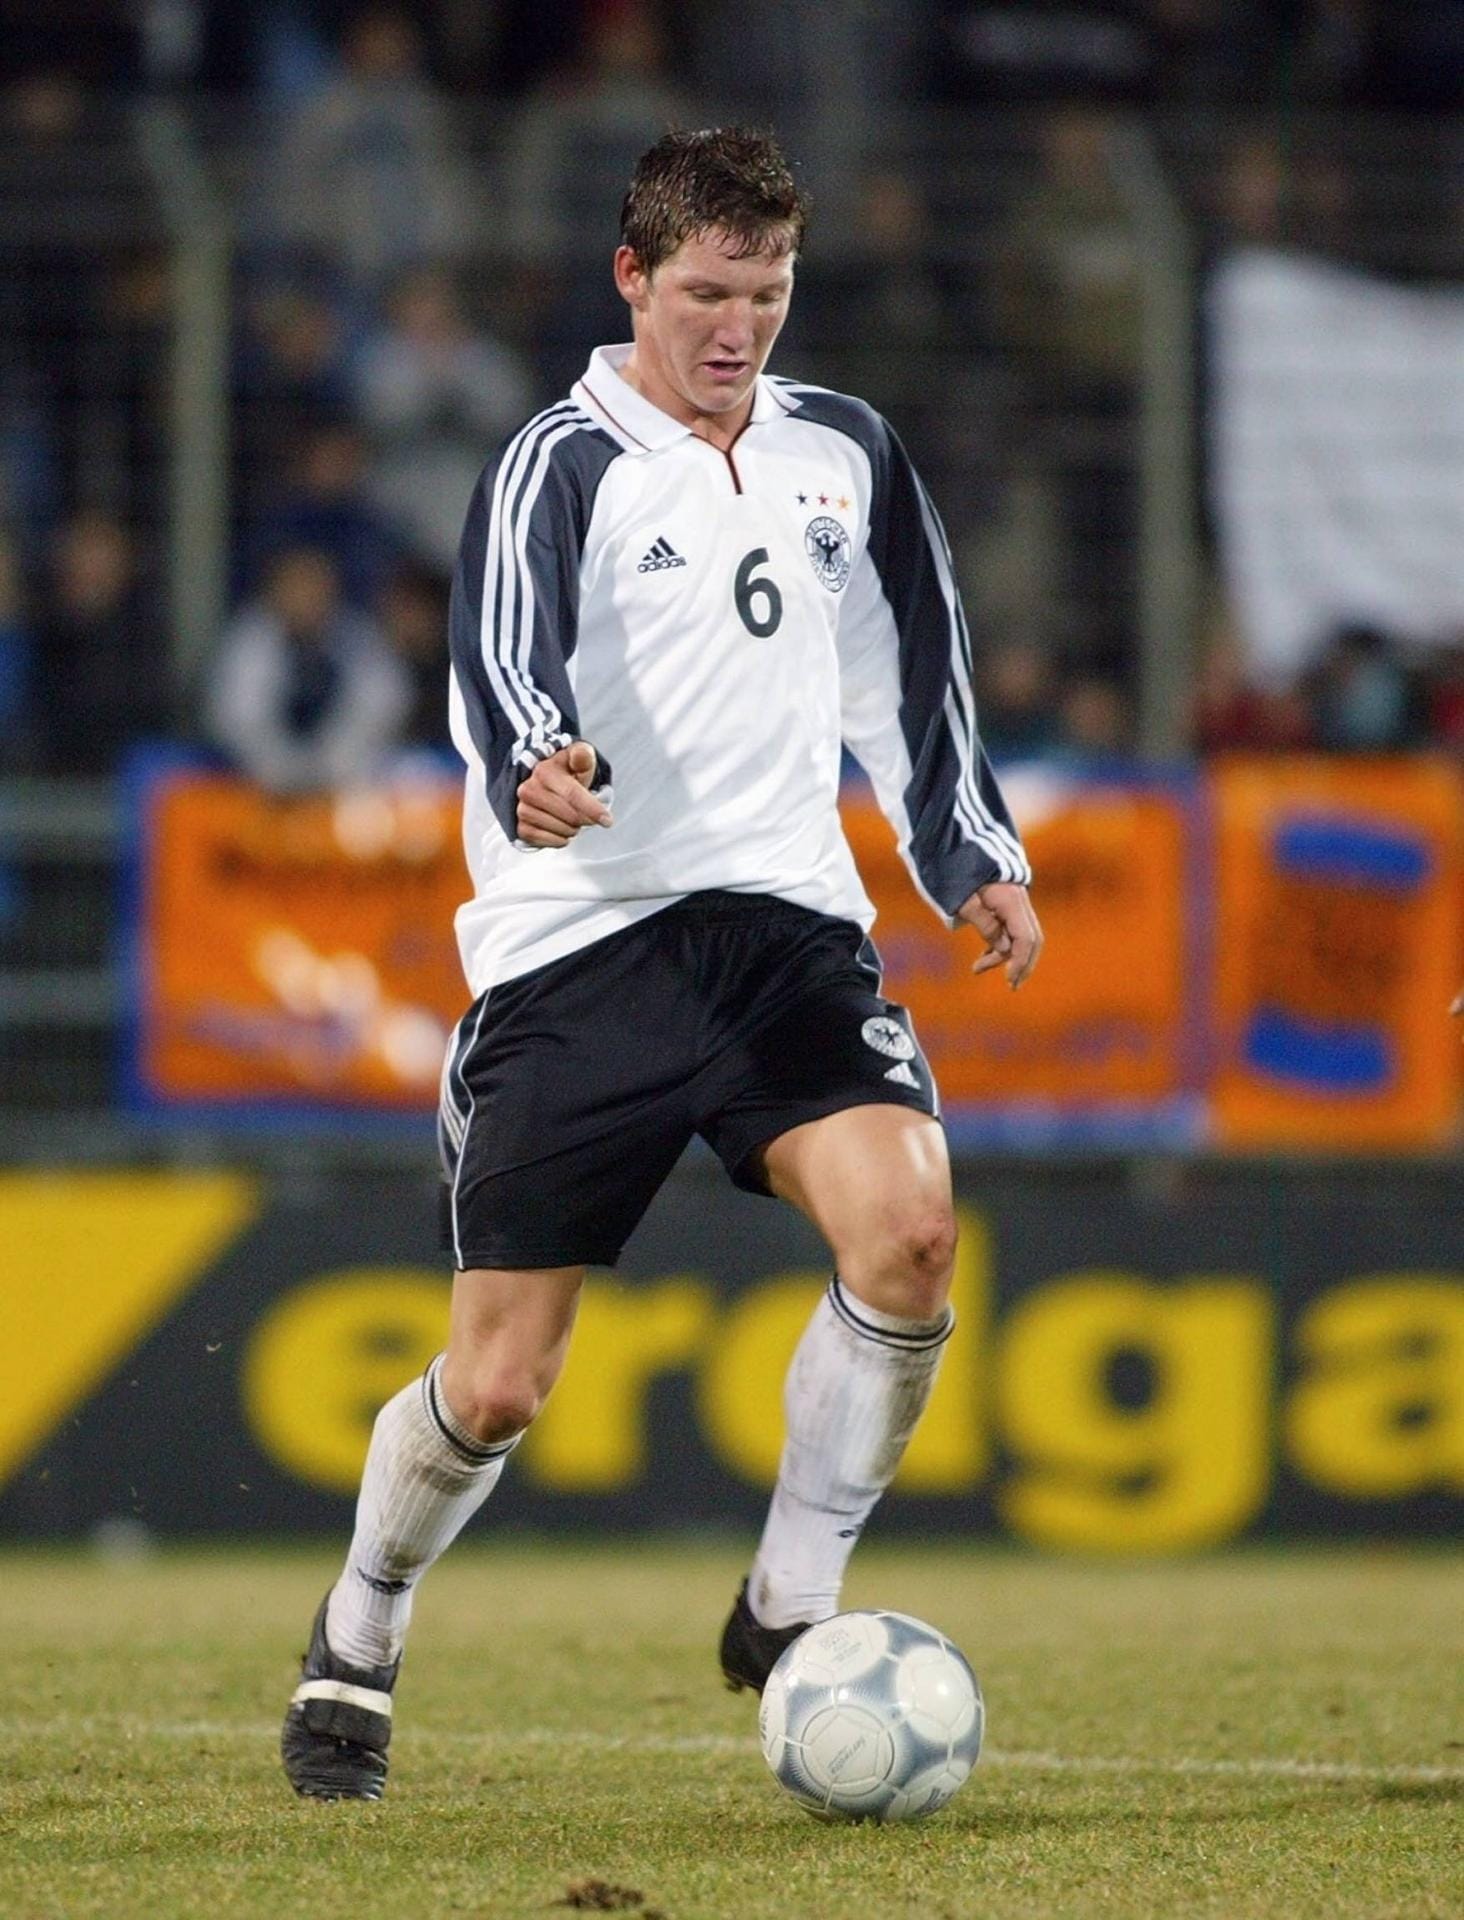 Für den DFB bestreitet Schweinsteiger in verschiedenen Altersstufen insgesamt 26 Jugend-Länderspiele.